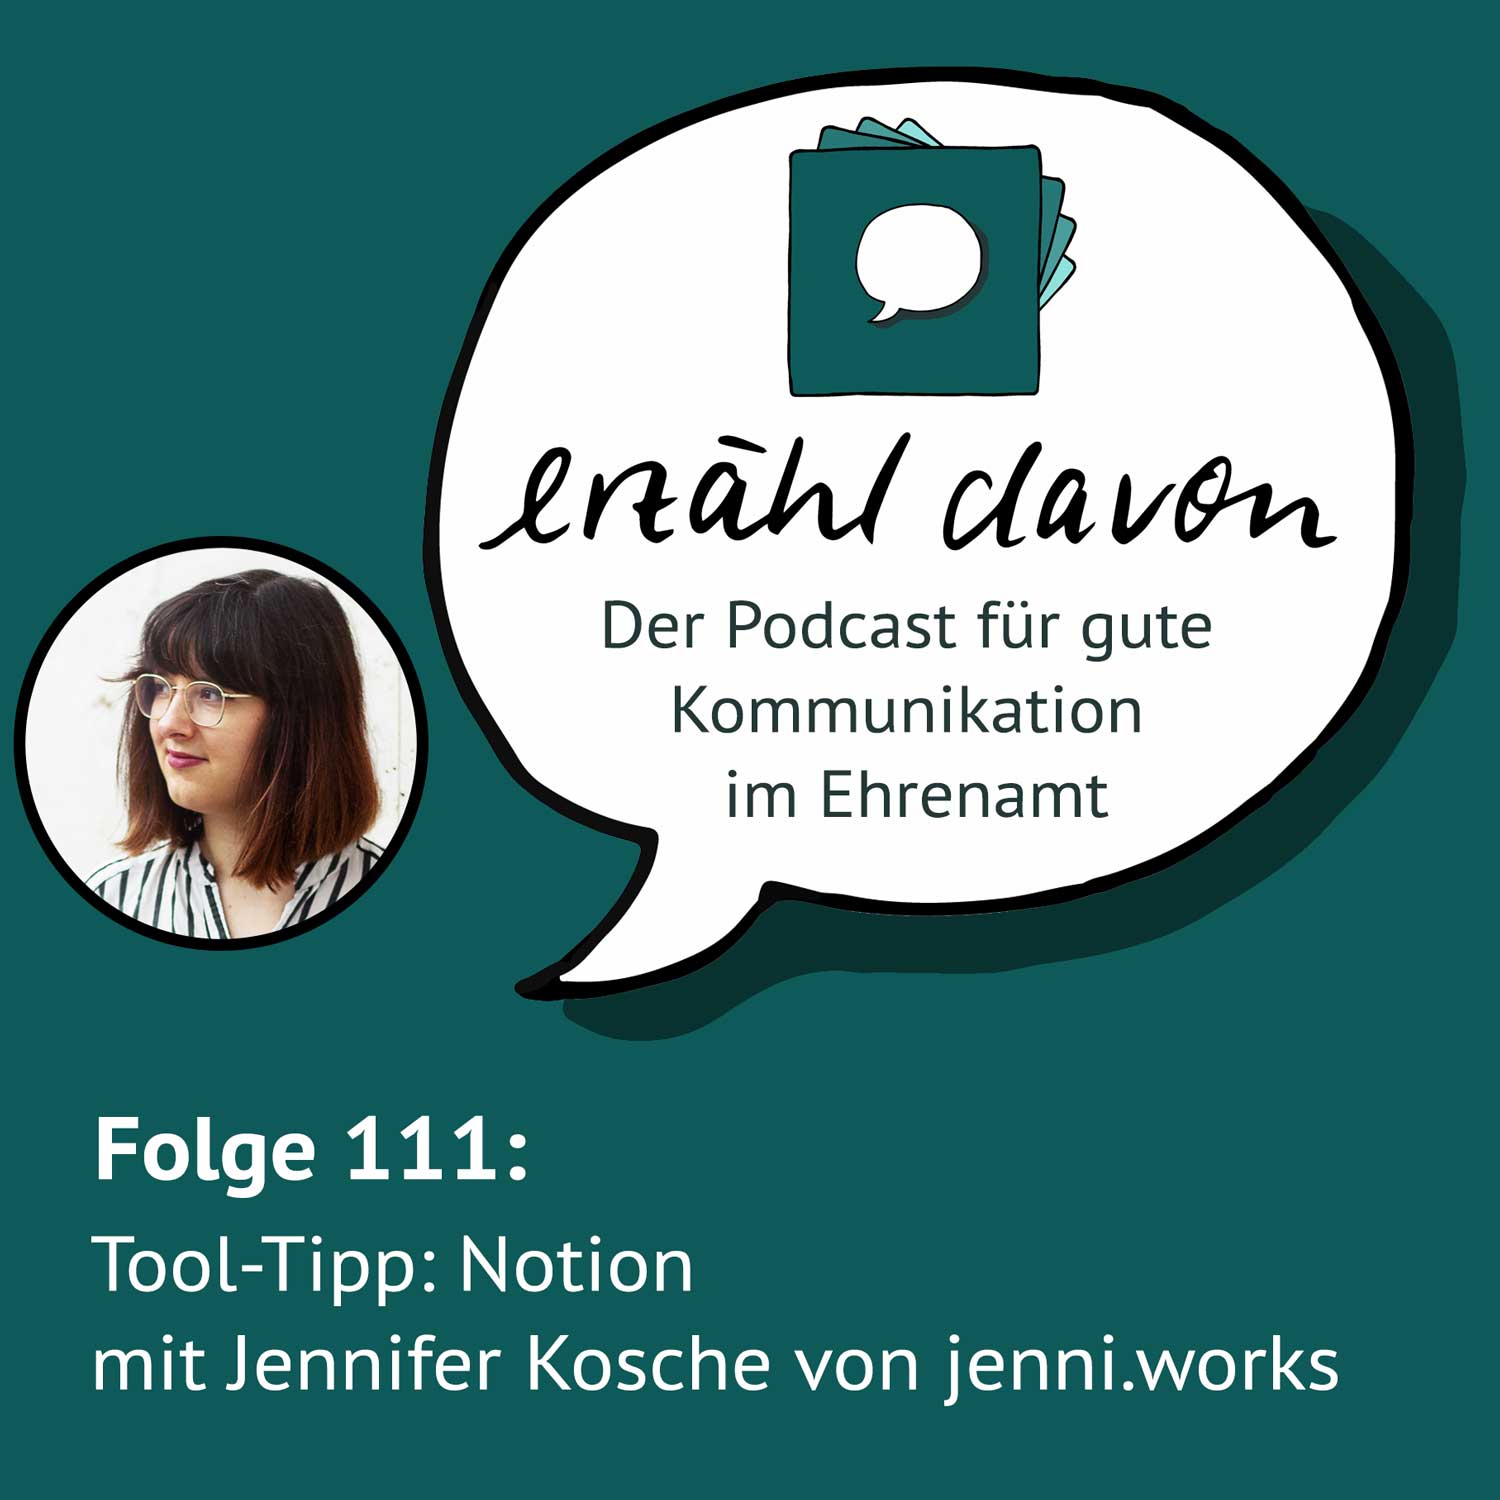 Tool-Tipp: Notion mit Jennifer Kosche von jenni.works